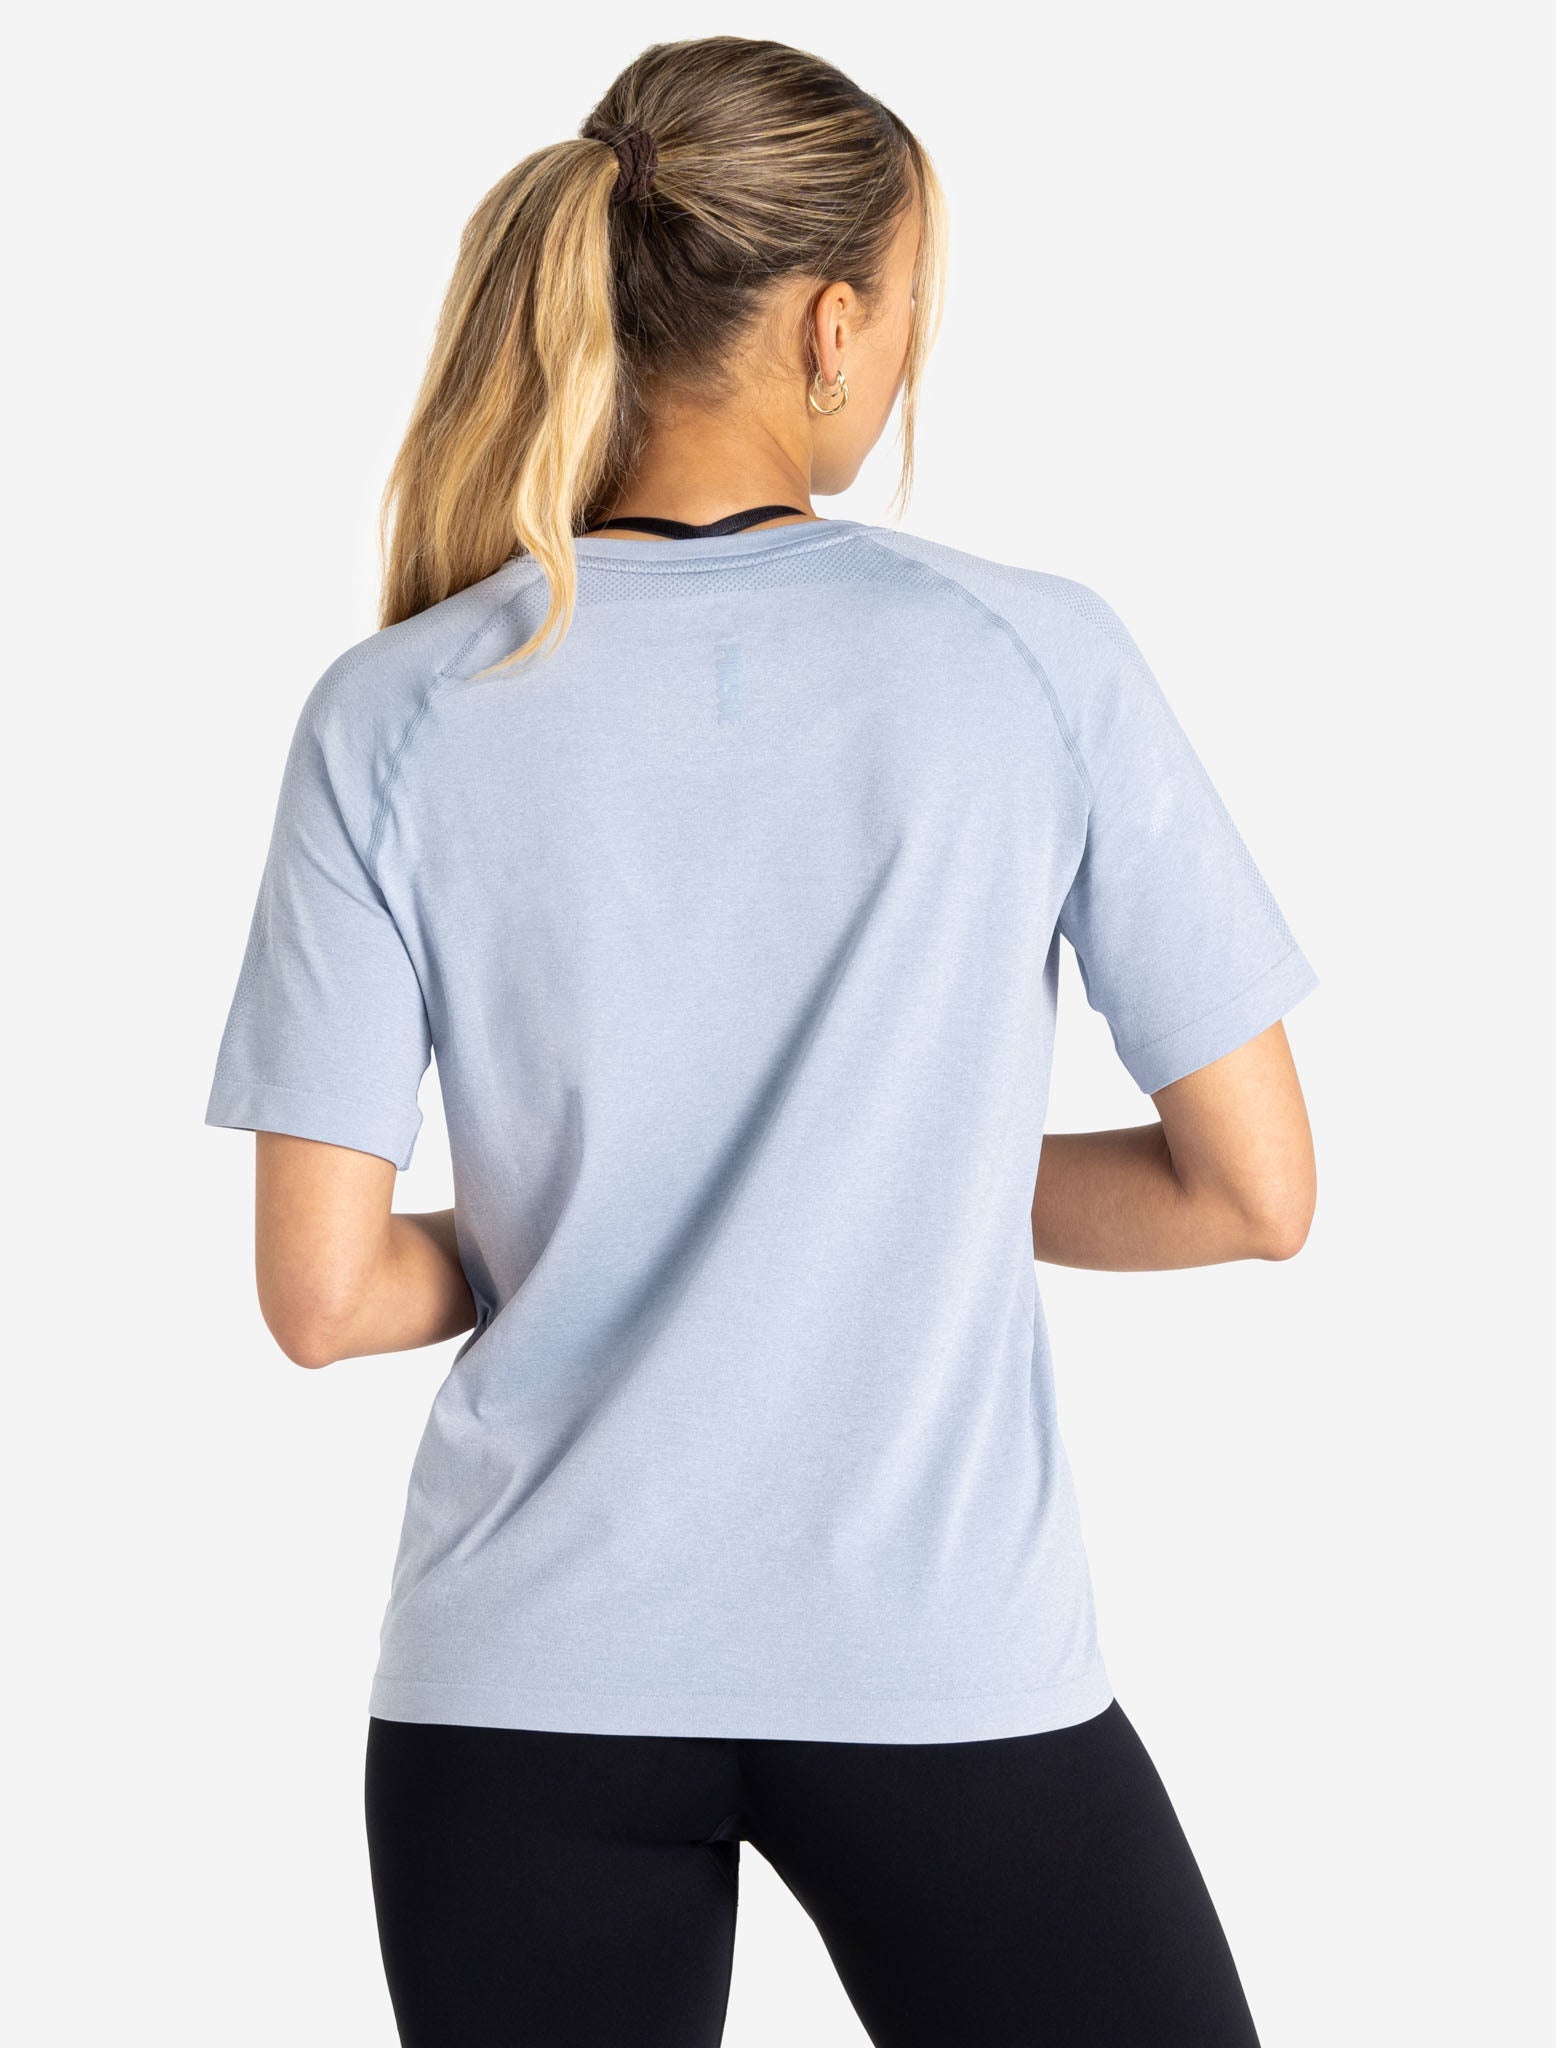 Seamless T-Shirt / Blue Marl Pursue Fitness 4